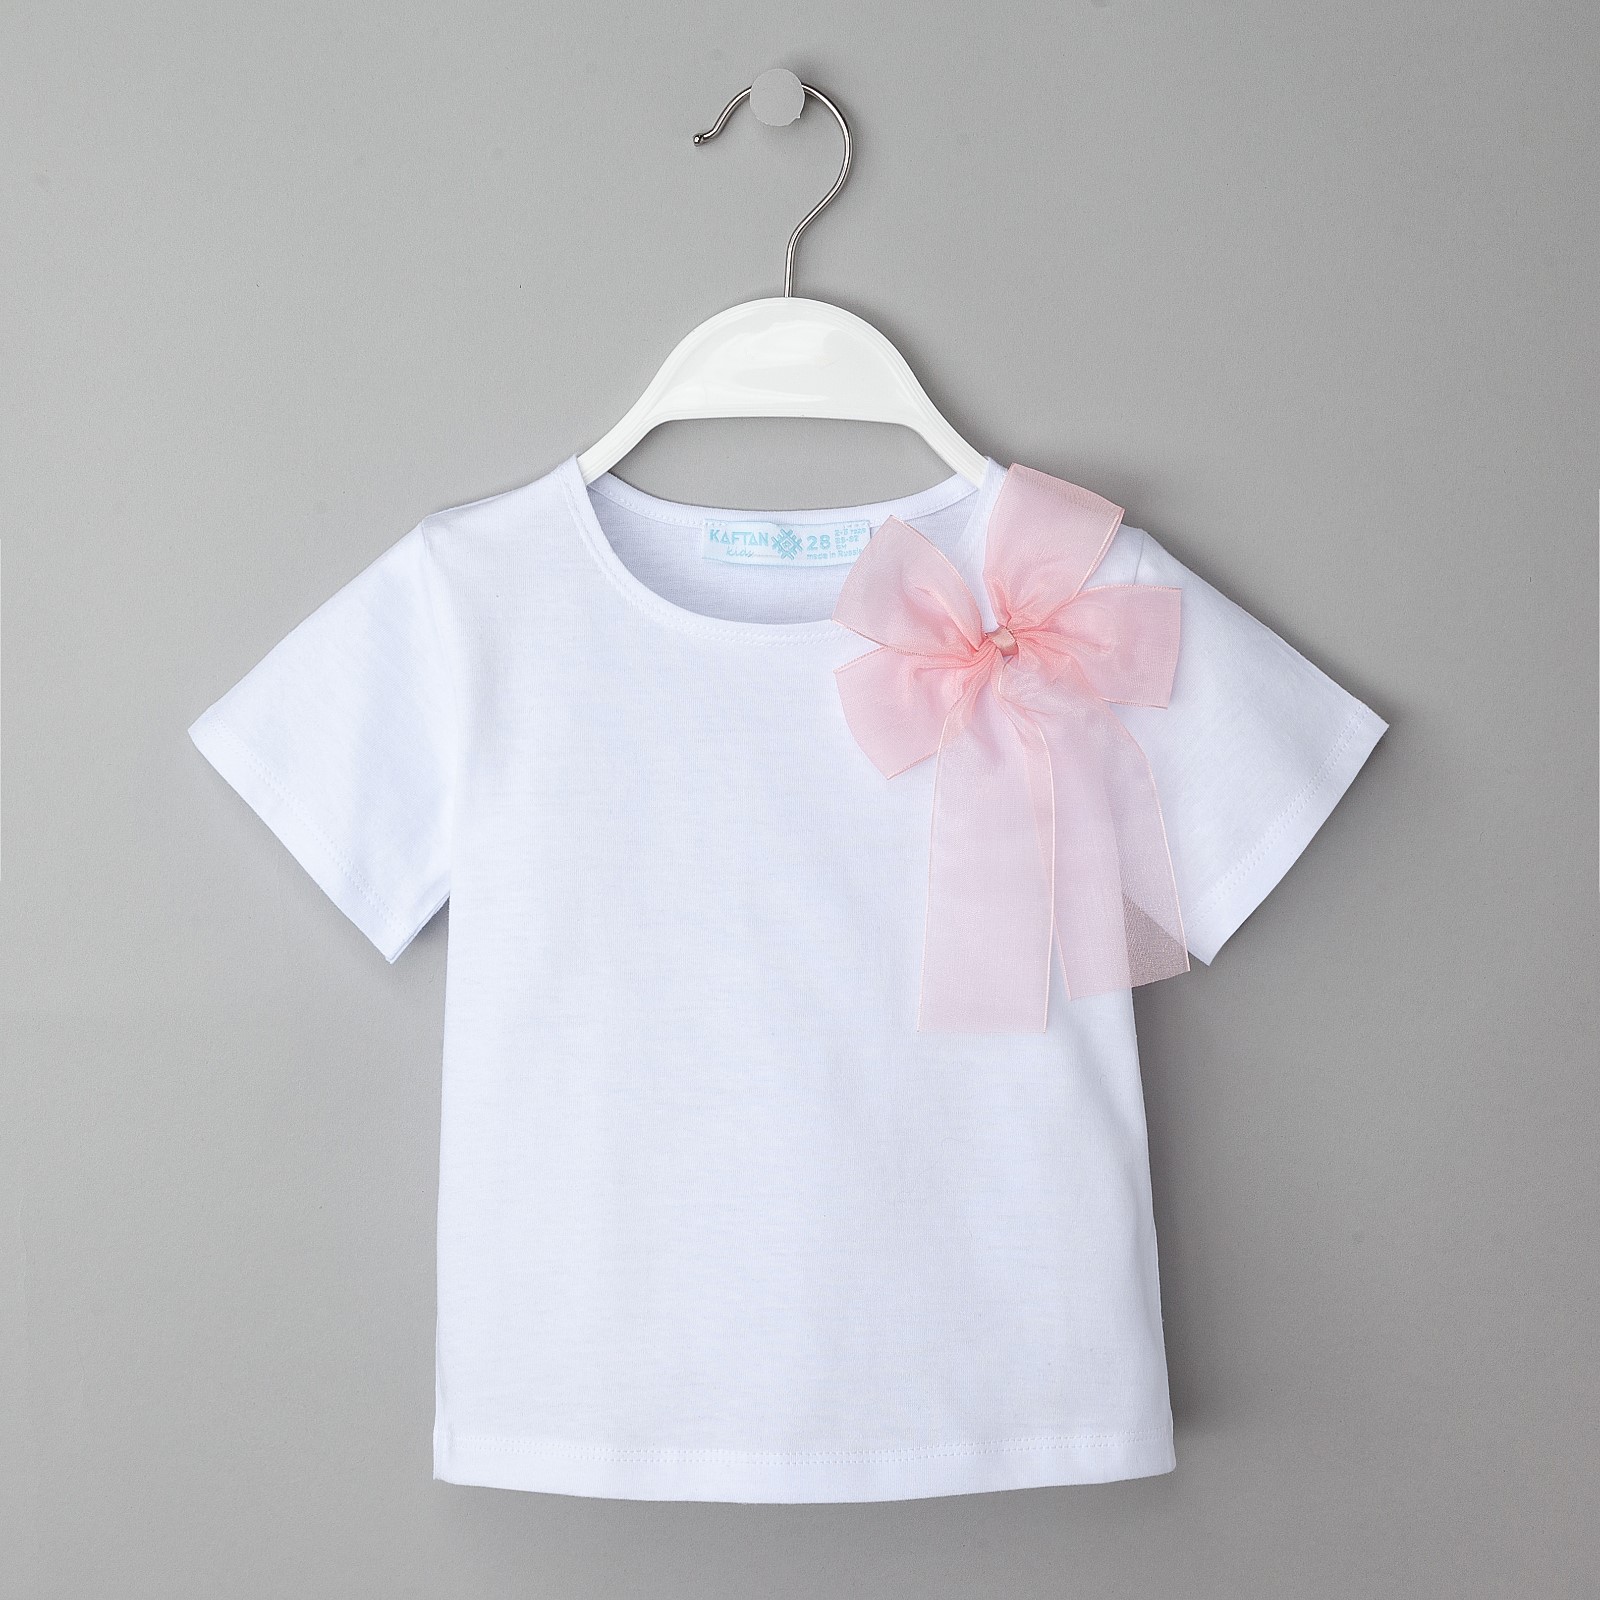 Детская футболка Бантик Цвет: Белый (3-4 года) KAFTAN kaf592097